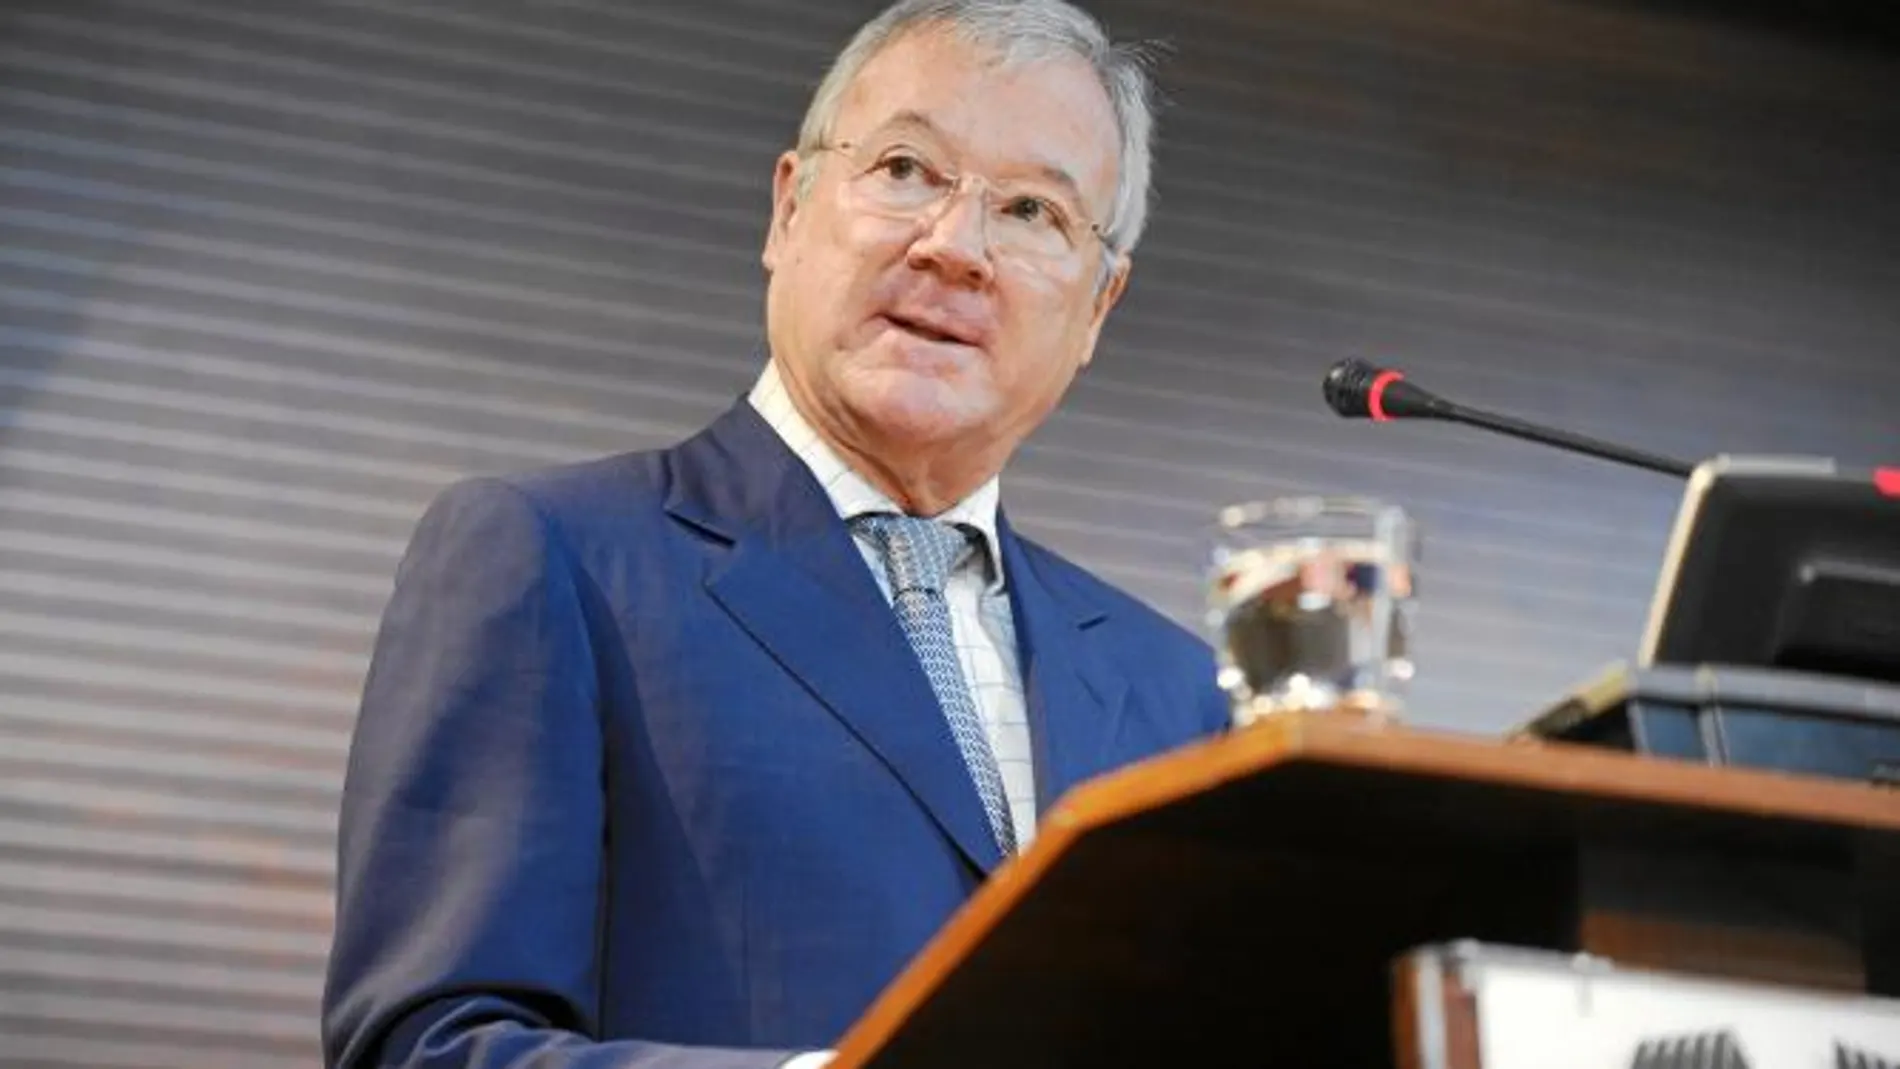 El presidente de la Región de Murcia, Ramón Luis Valcárcel, ayer durante su intervención en el Hotel Nelva